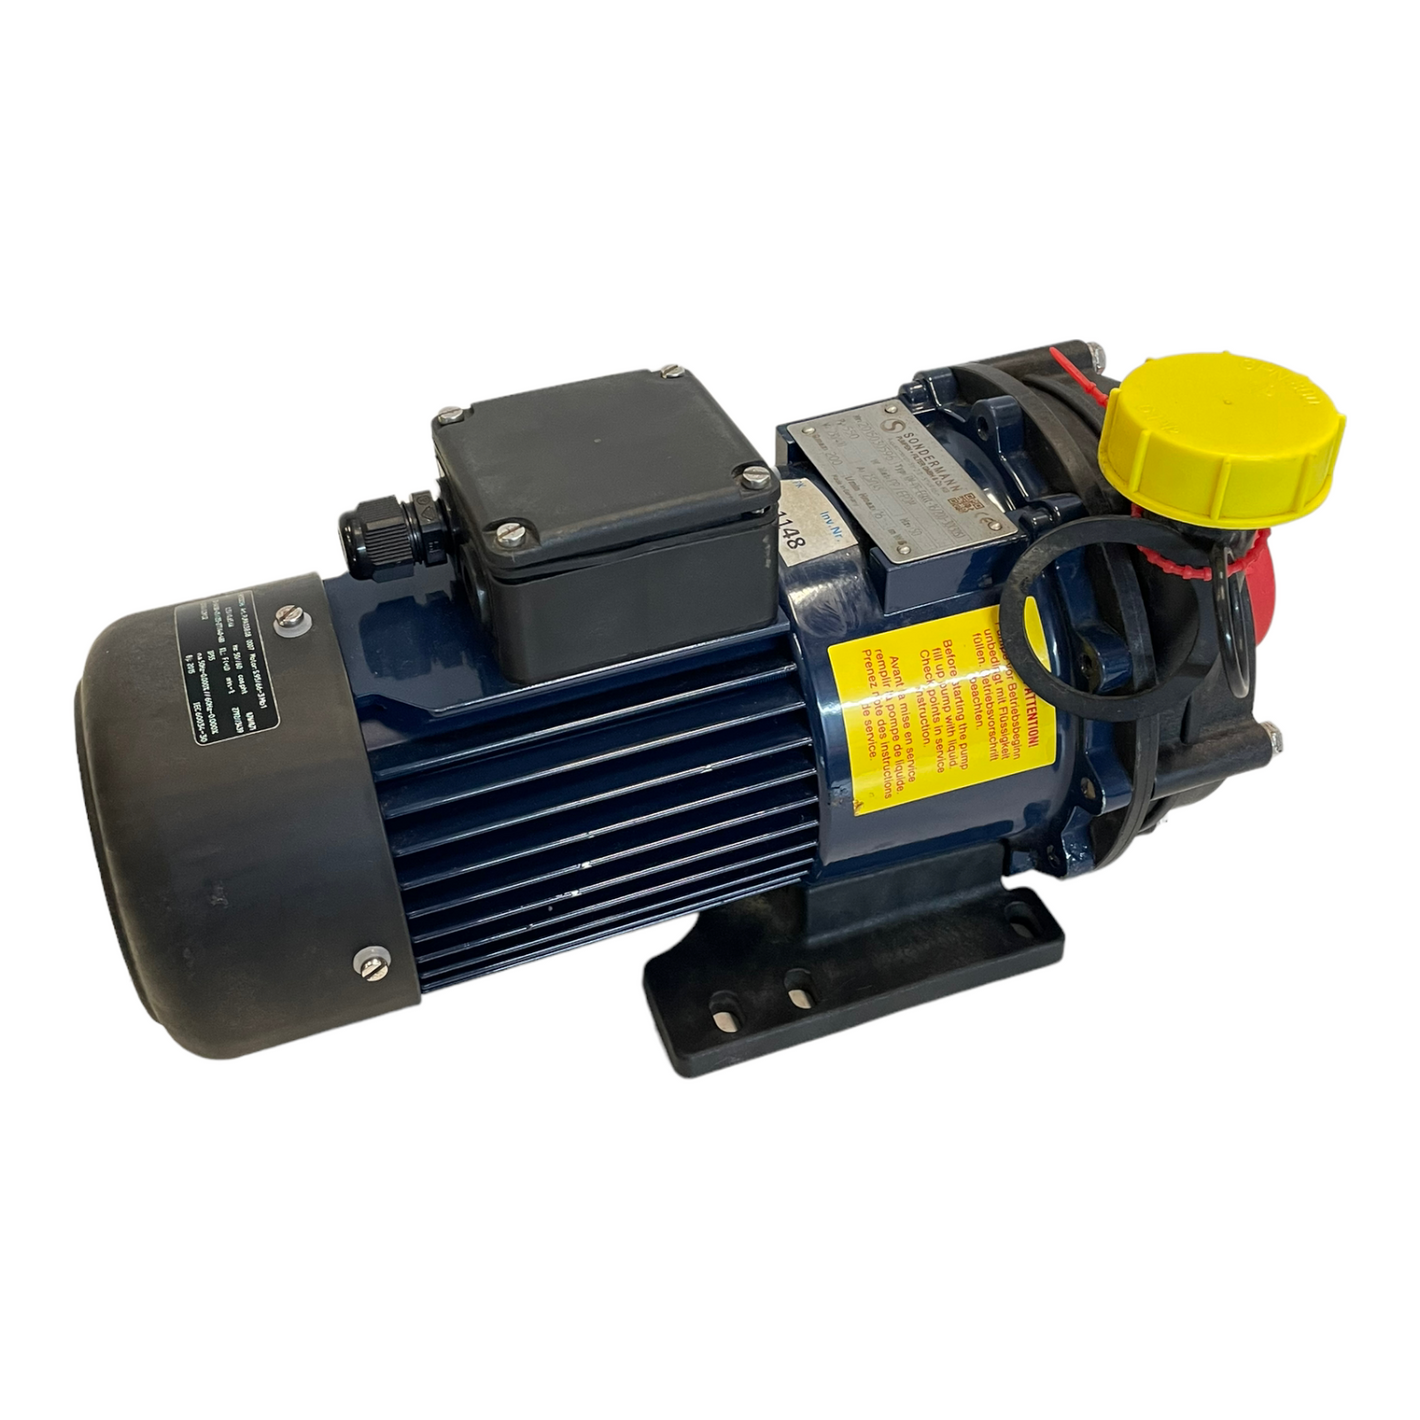 Sondermann RM-PP-EGKKK-16/200-30(30S) water pump for industrial use 